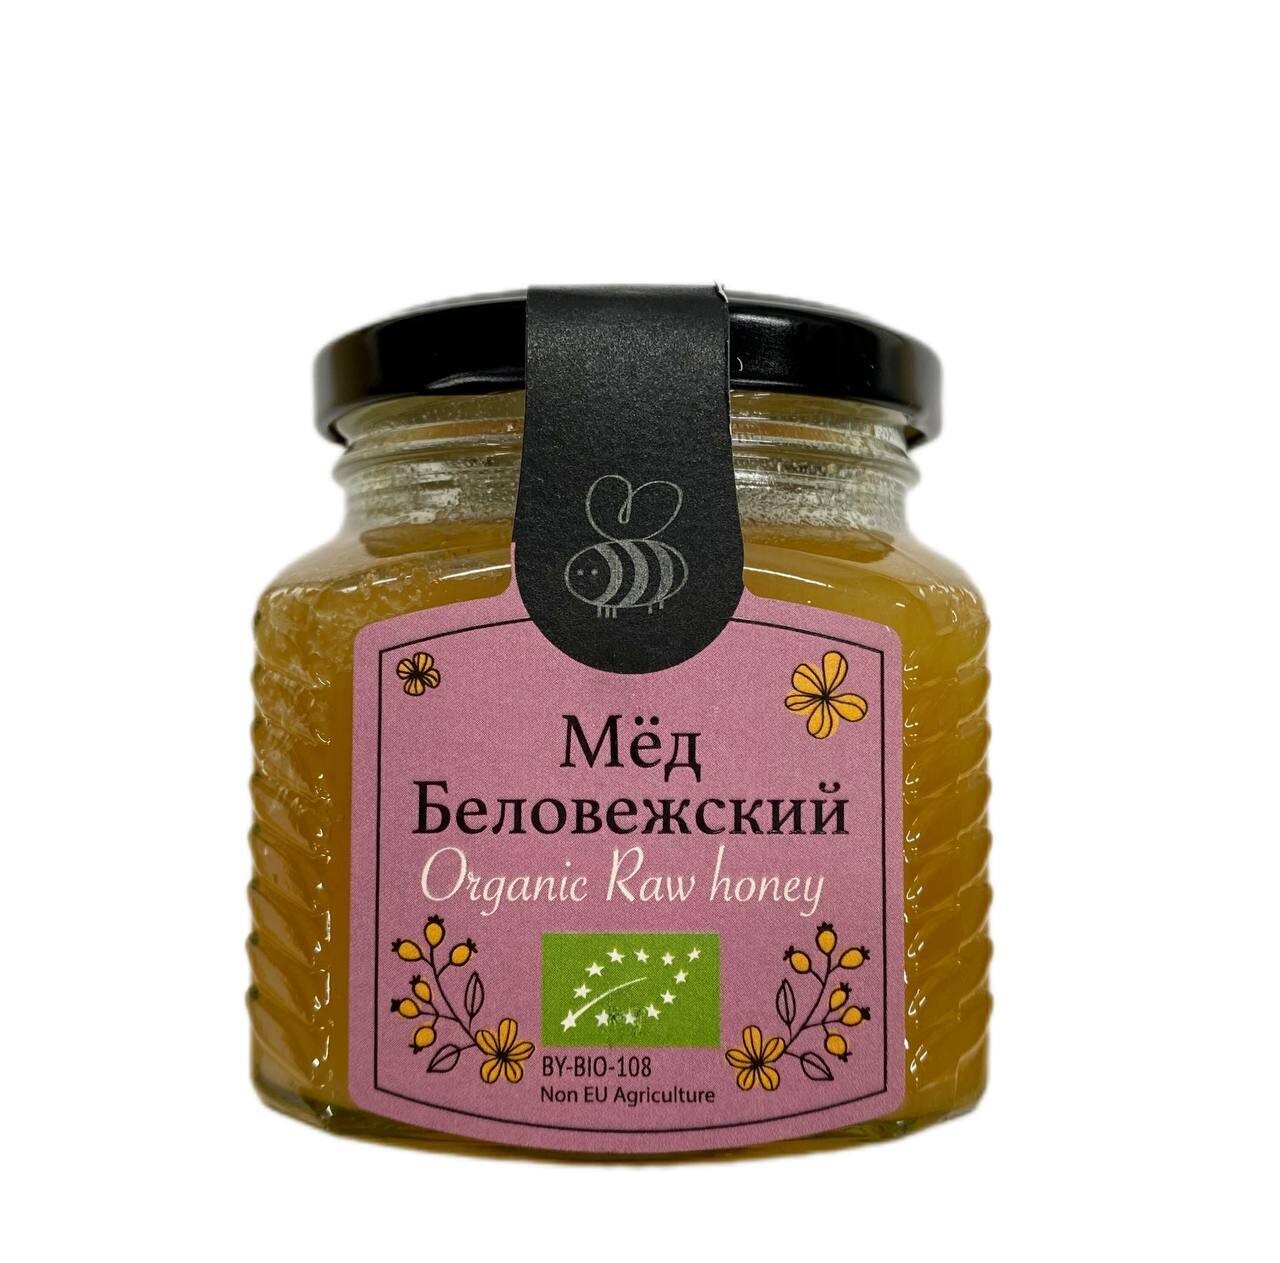 Мёд натуральный цветочный Беловежский, Biologic.tv, 300 г